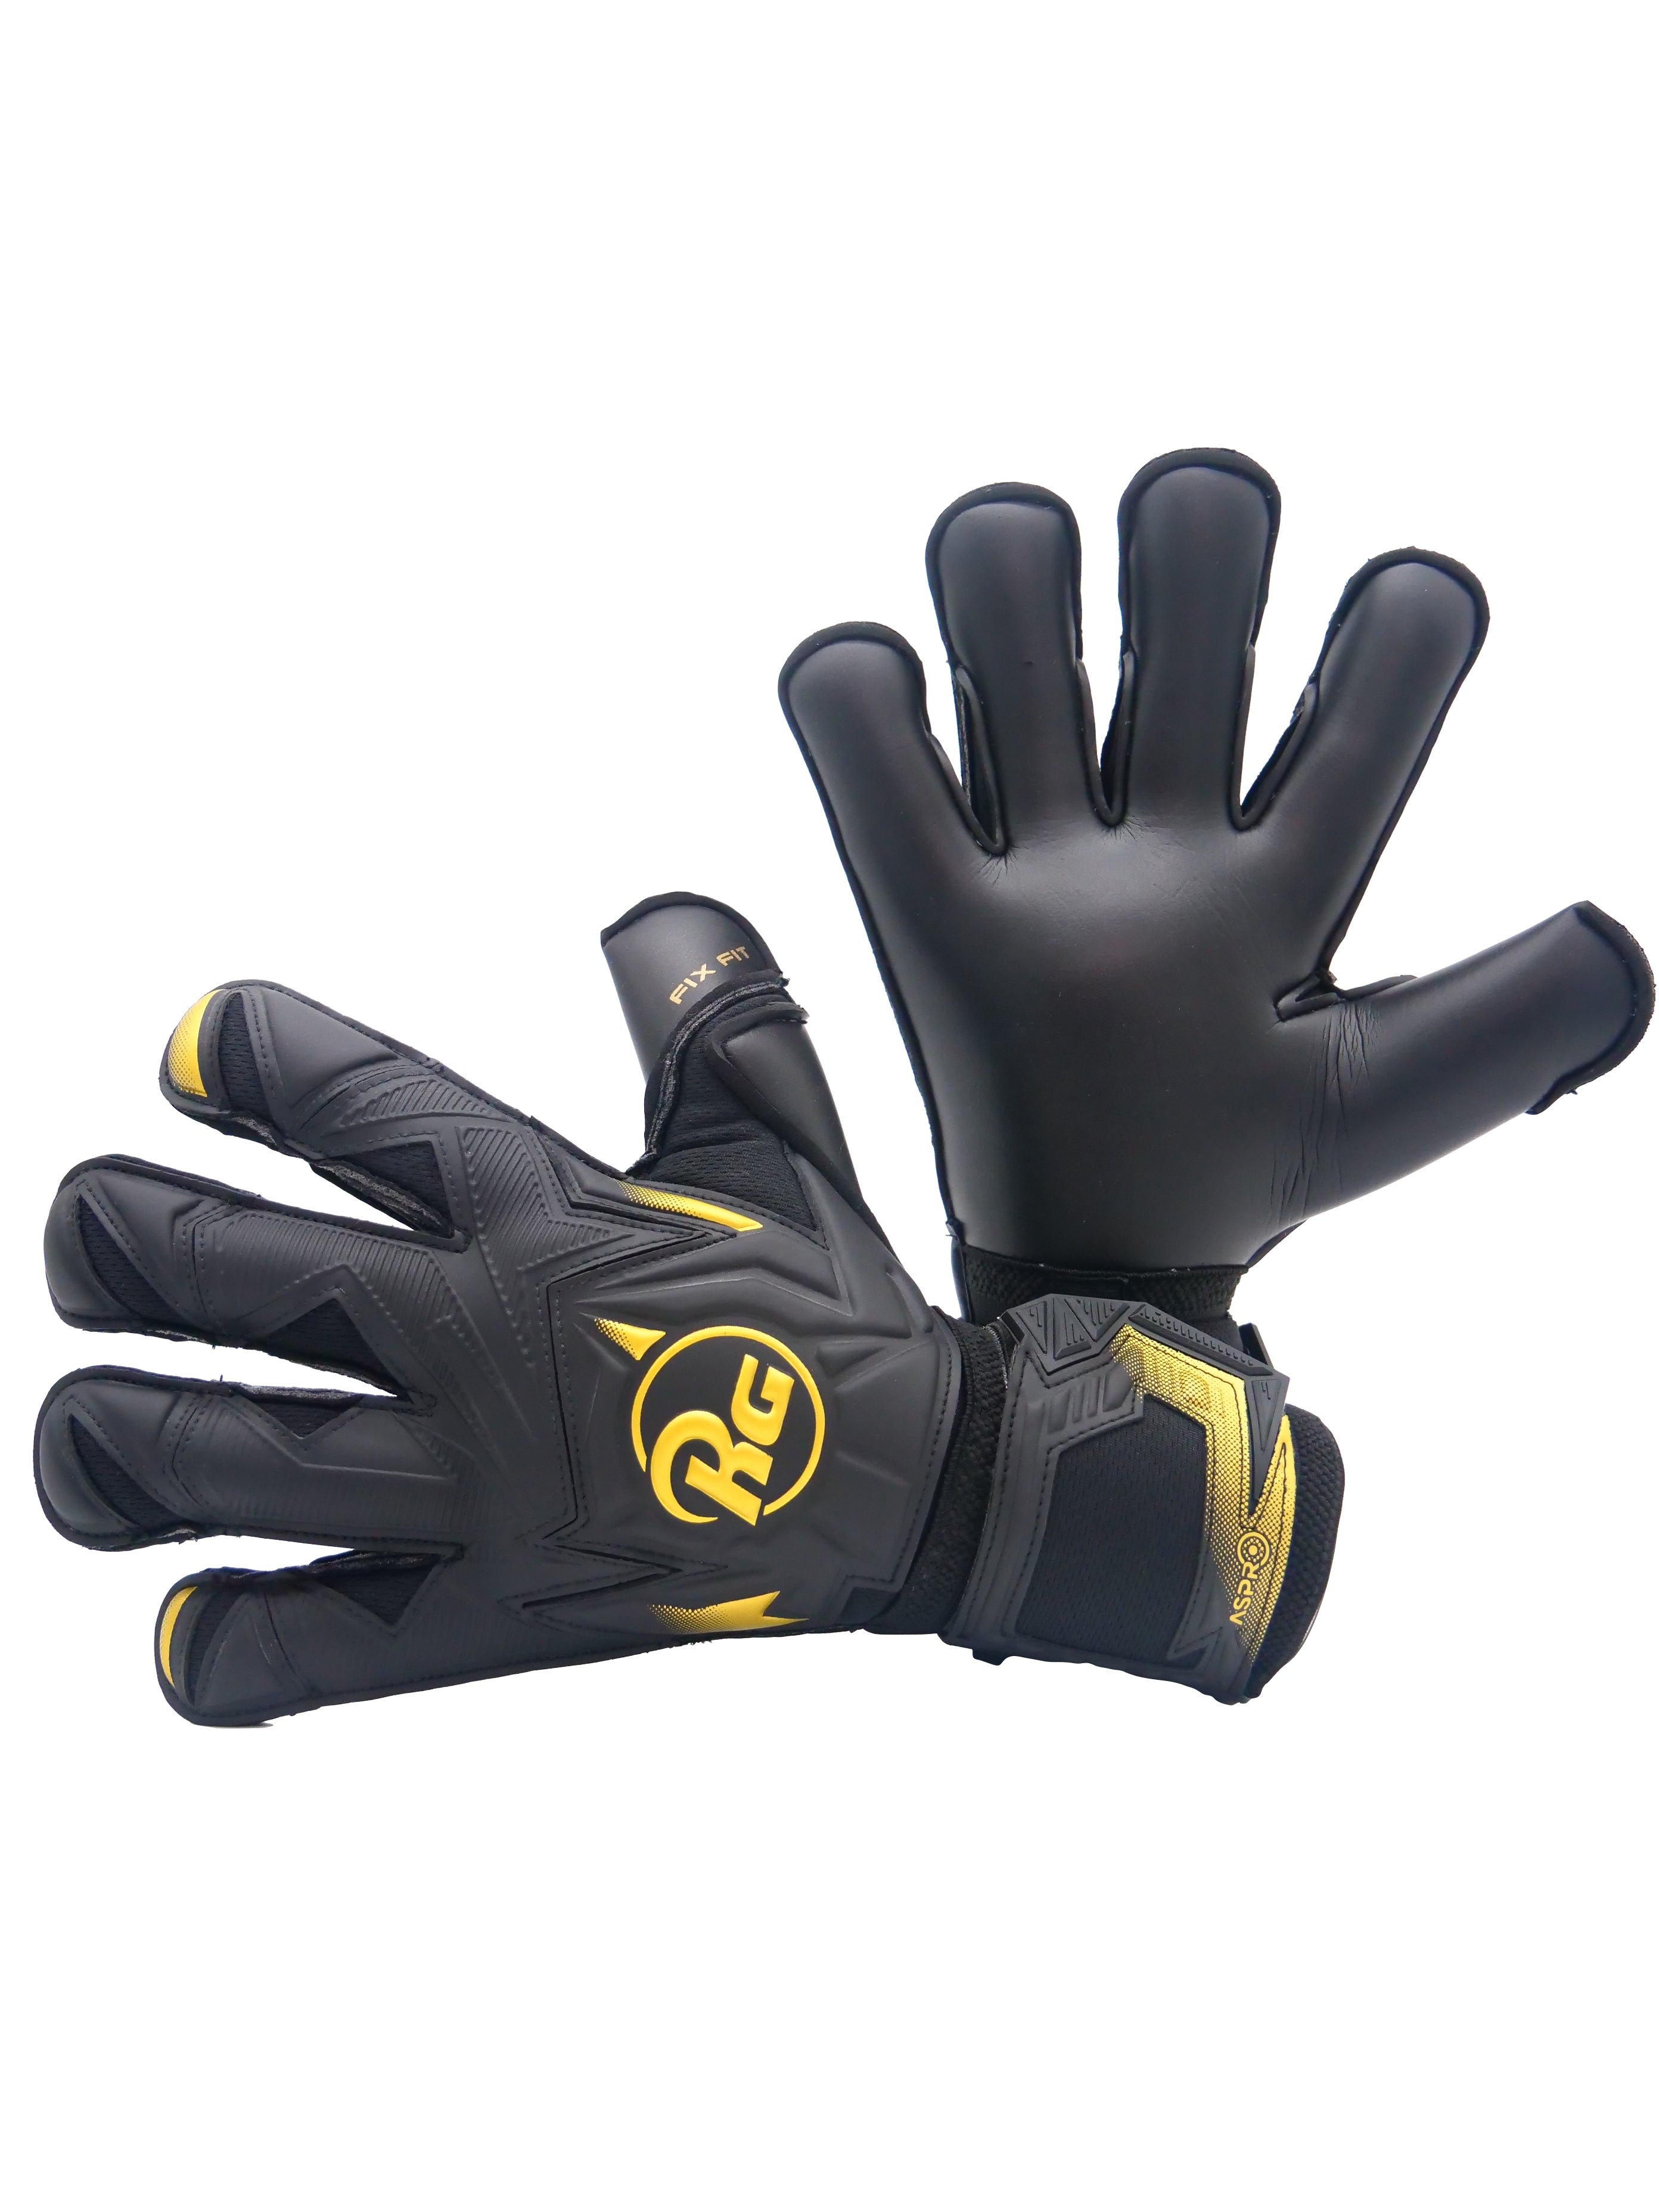 RG Aspro Blackout Gloves